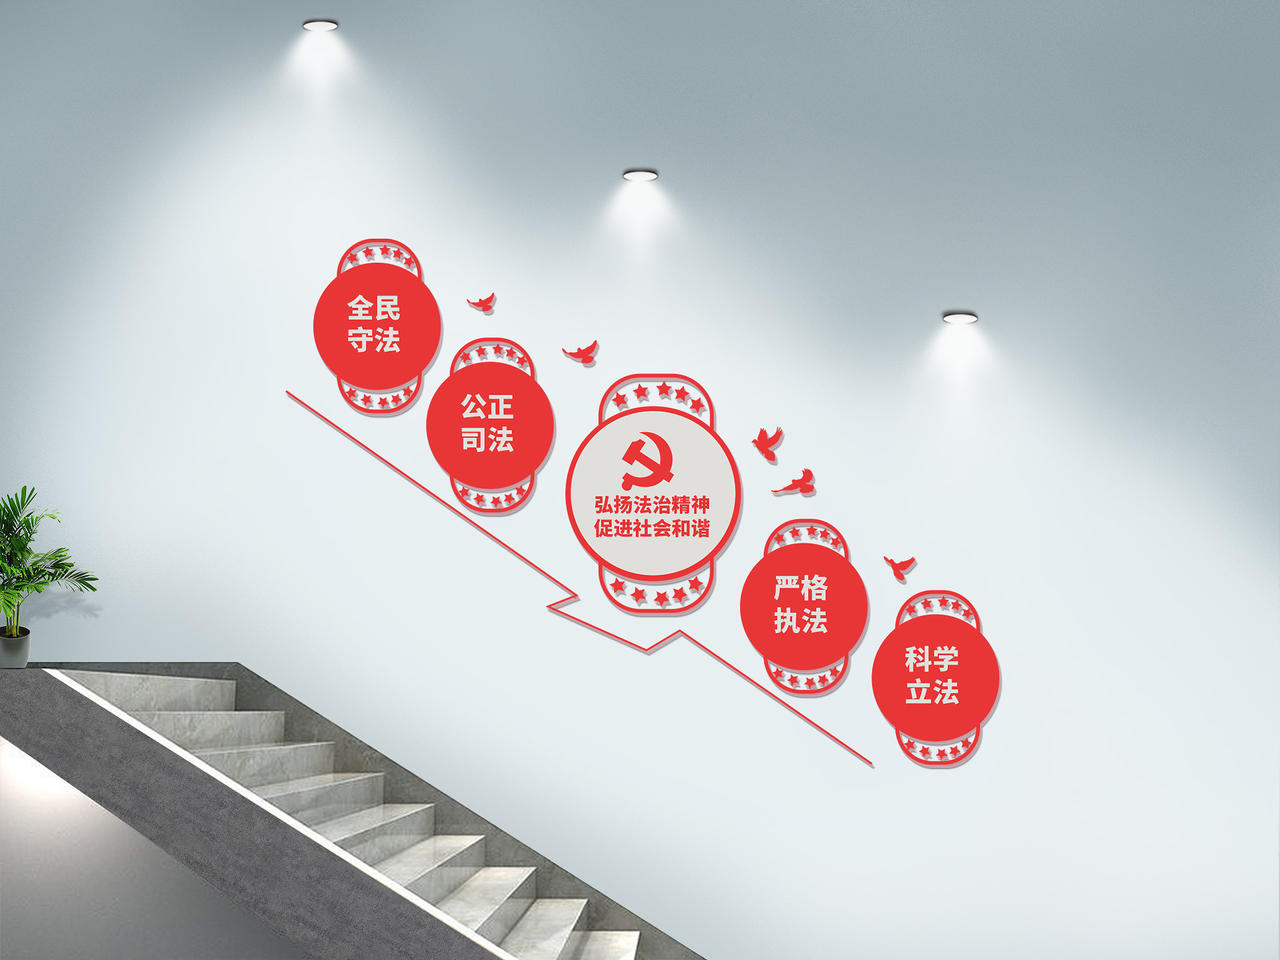 红色大气简洁风格弘扬法制精神促进社会和谐楼梯文化墙设计党建楼梯文化墙